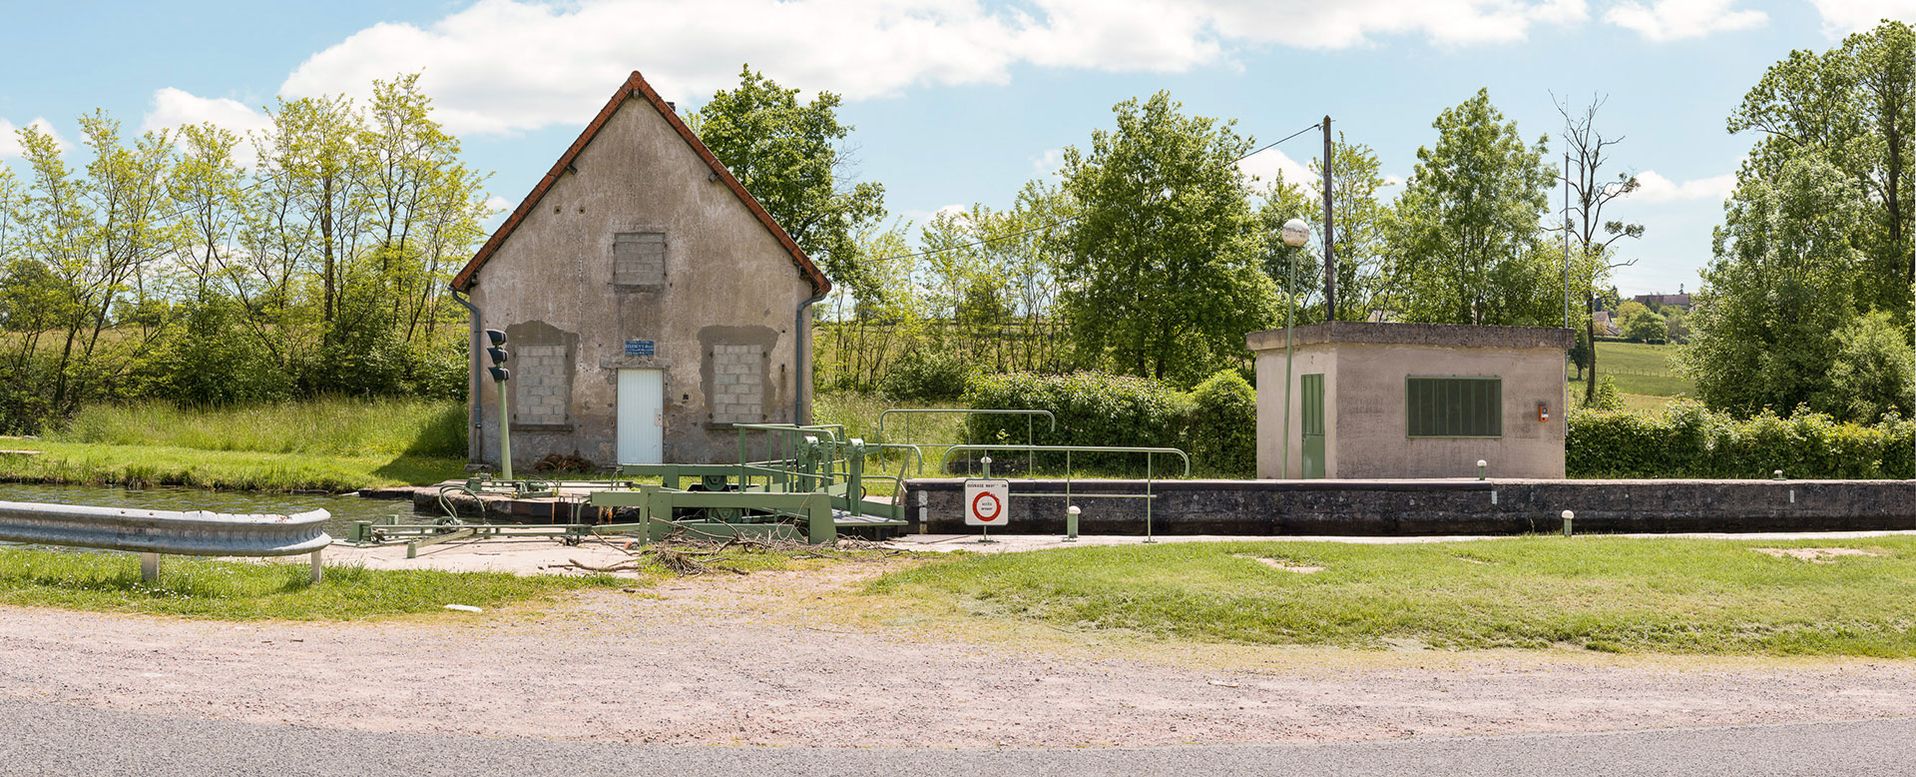 Maison éclusière du site d’écluse 01 du versant Océan, à Bois-Bretoux, bief de partage, Montchanin. Les ouvertures de la maison, de modèle Gauthey, ont été modifiées et sont actuellement murées.